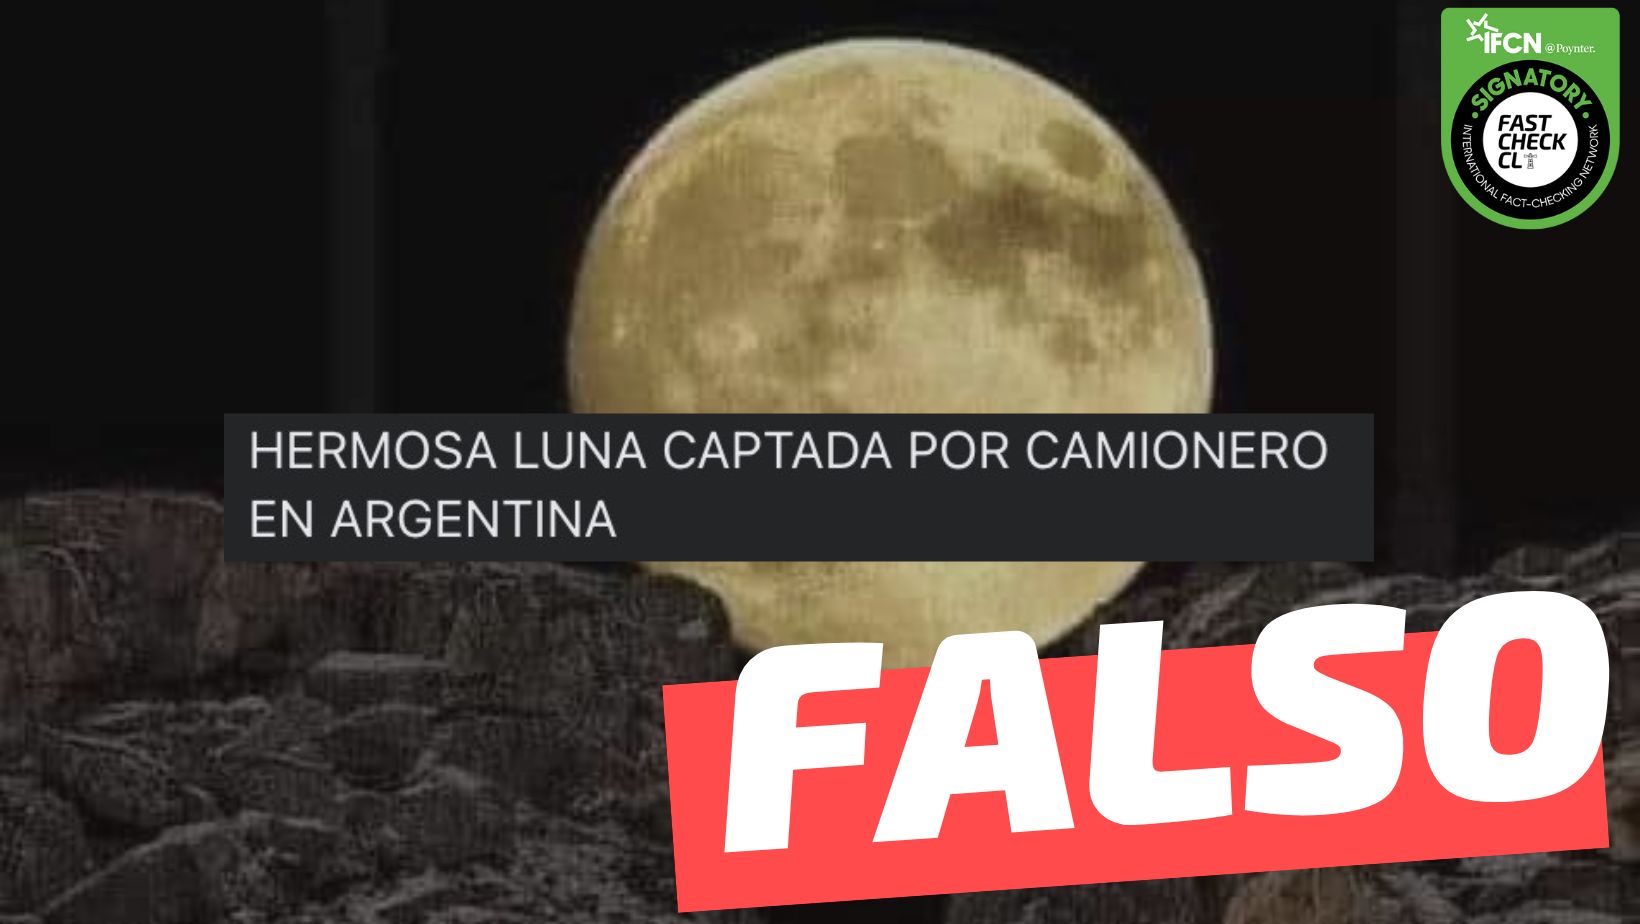 You are currently viewing (Imagen) “Hermosa luna captada por camionero en Argentina”: #Falso